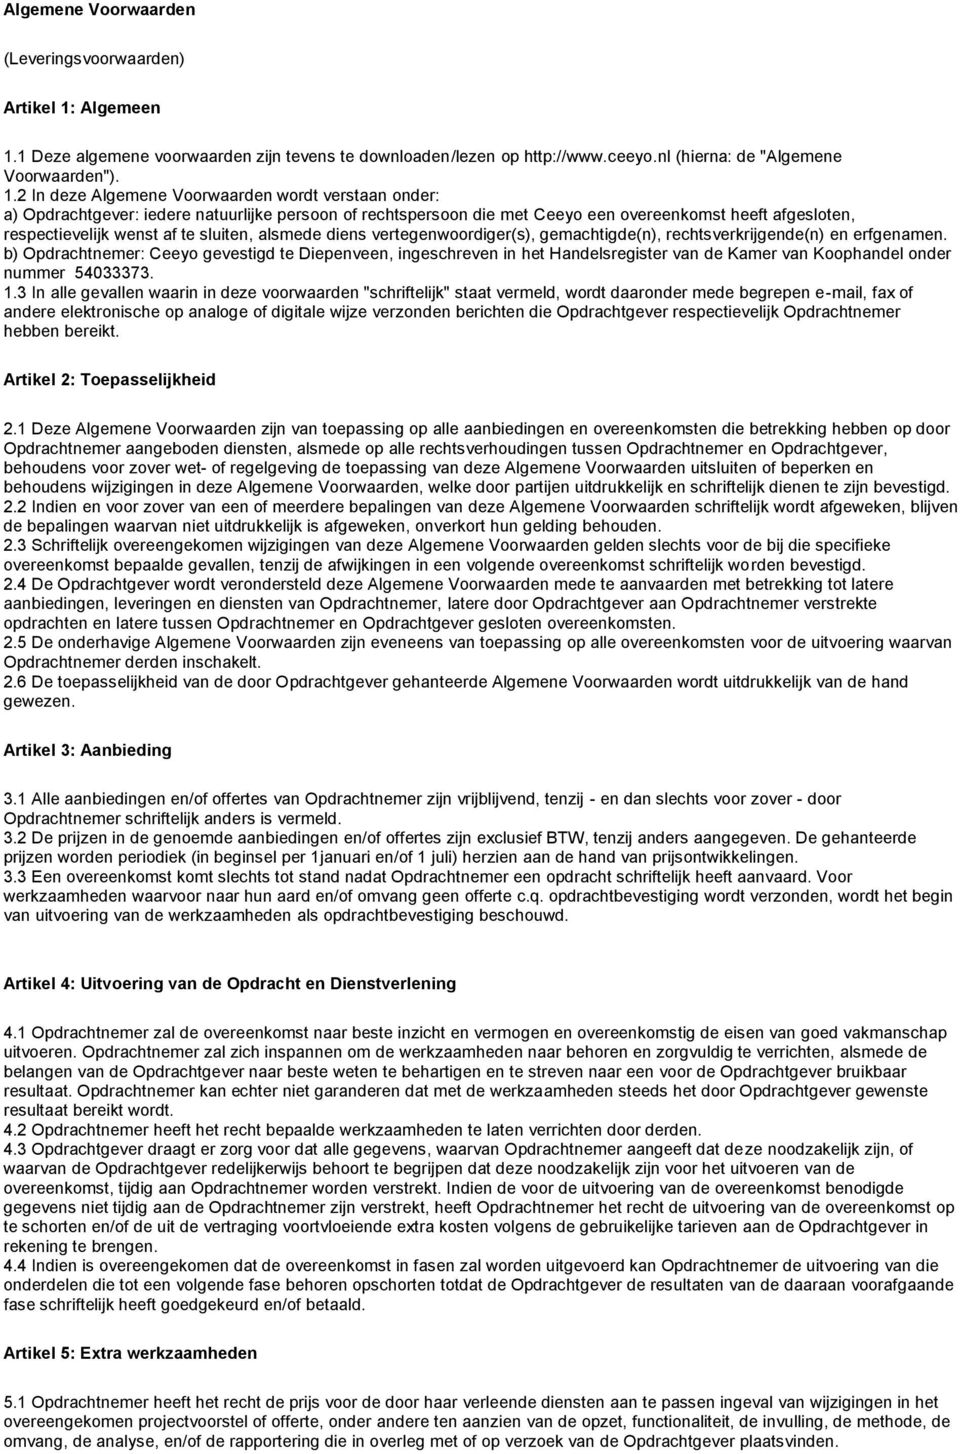 1 Deze algemene voorwaarden zijn tevens te downloaden/lezen op http://www.ceeyo.nl (hierna: de "Algemene Voorwaarden"). 1.